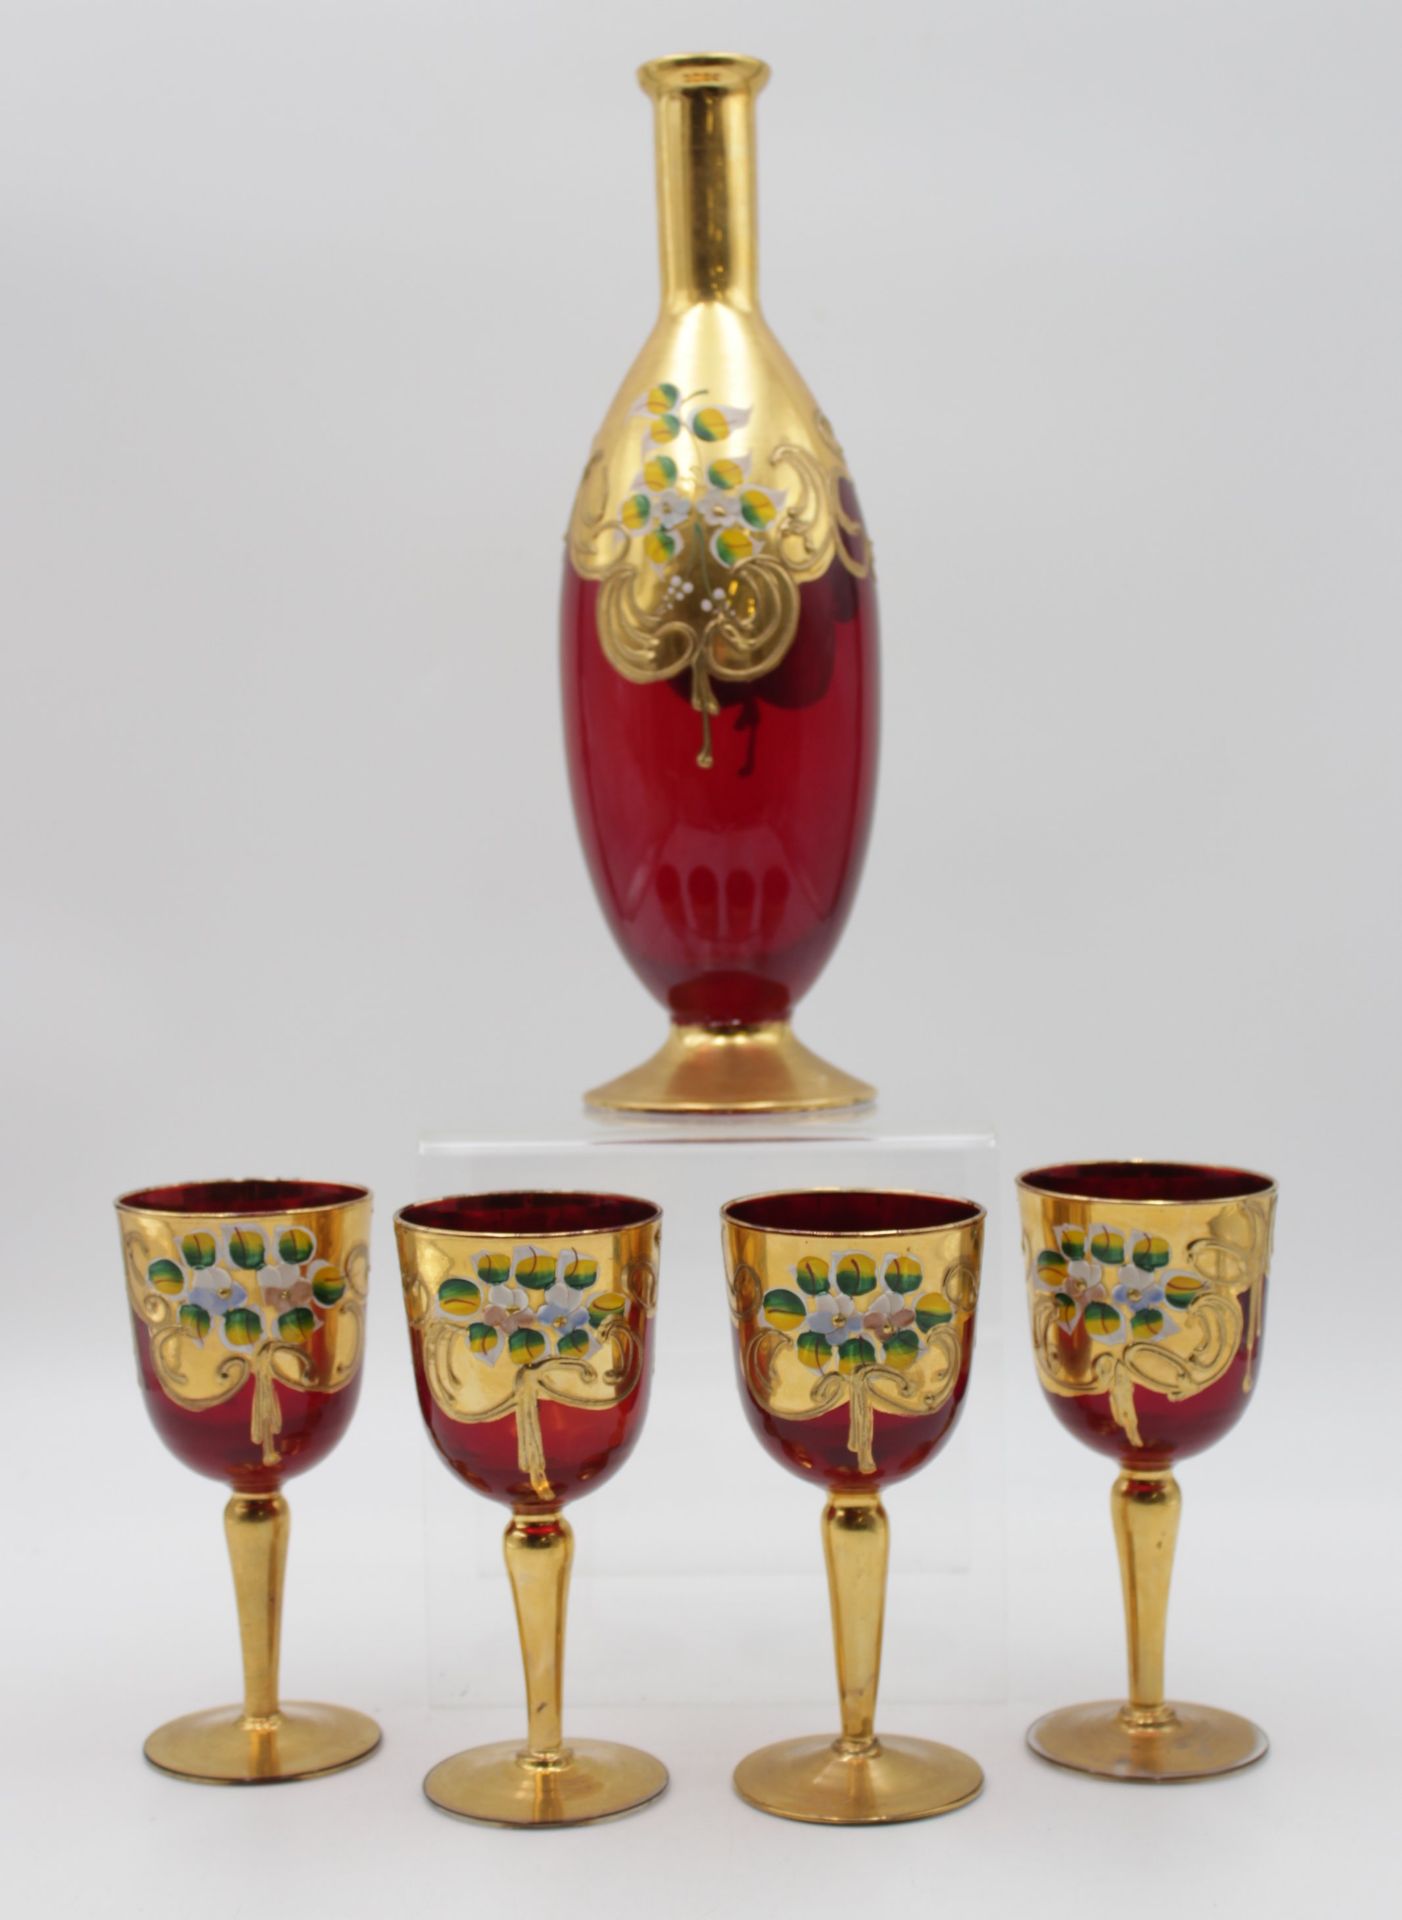 Karaffe mit 4 Weingläsern, Italien, rotes Glas mit floraler Emaillemalerei, Stöpsel fehlt, ca. H-29